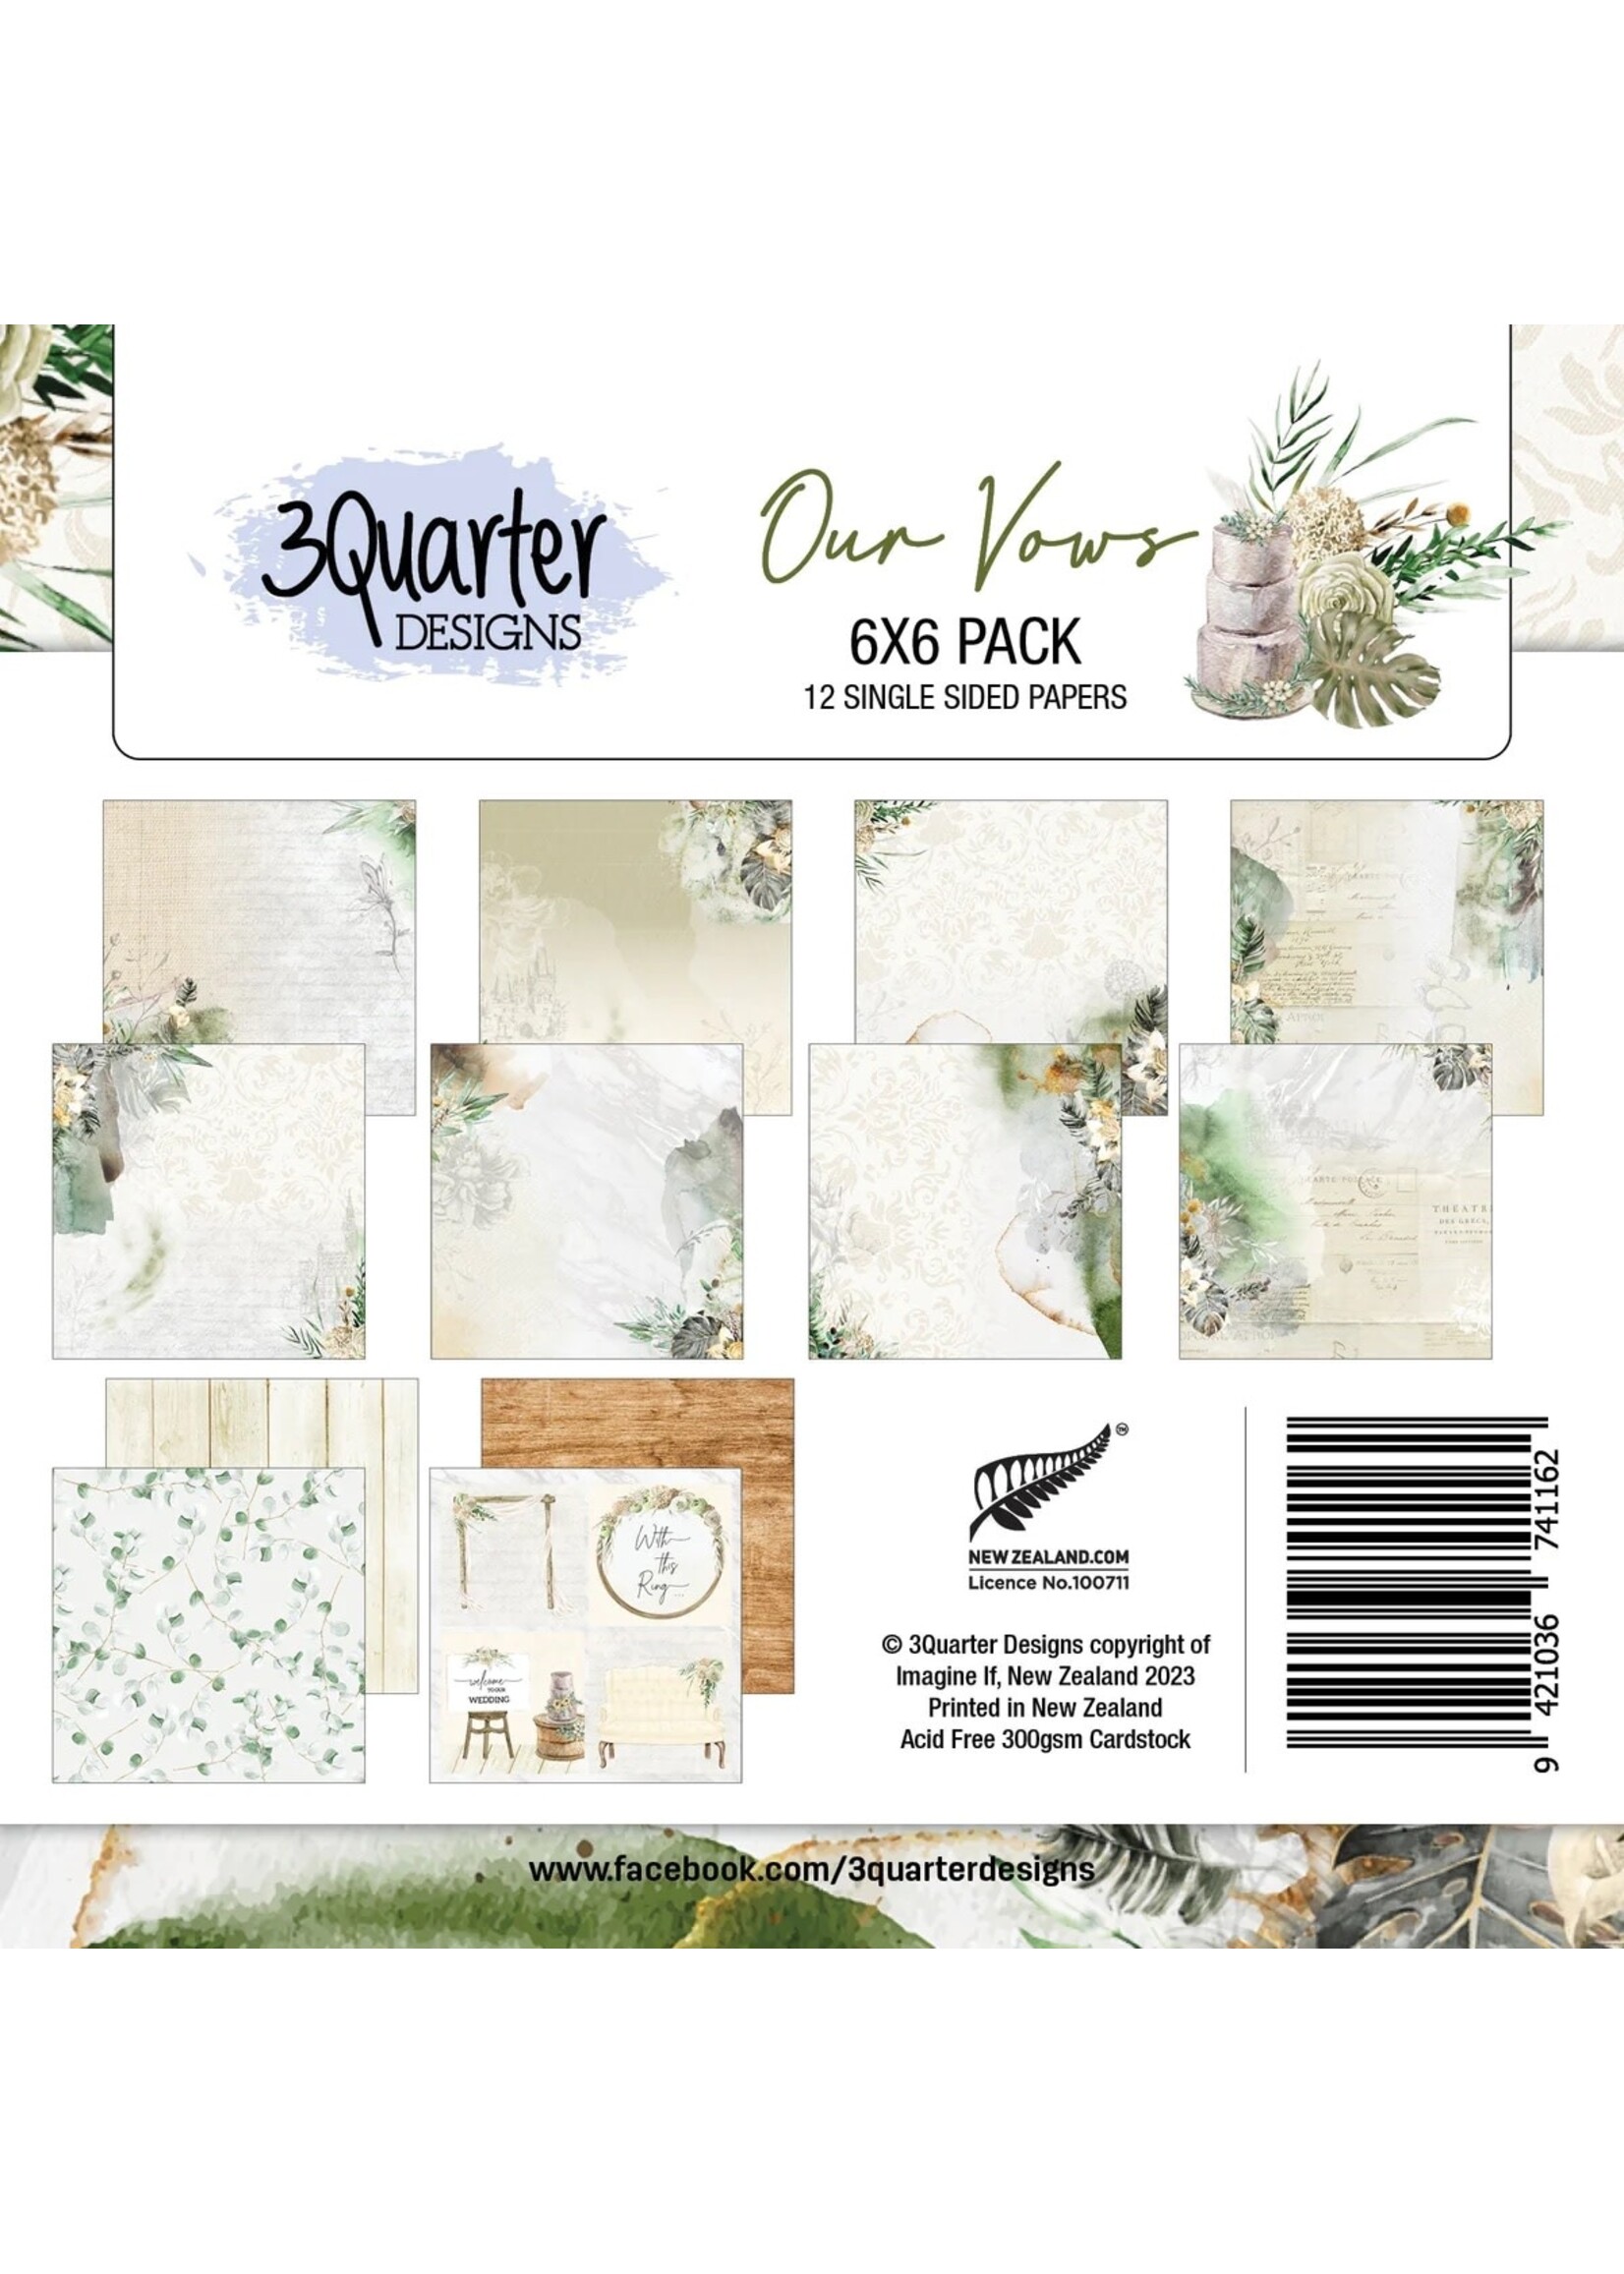 3Quarter Designs Our Vows 6x6 paper Pad